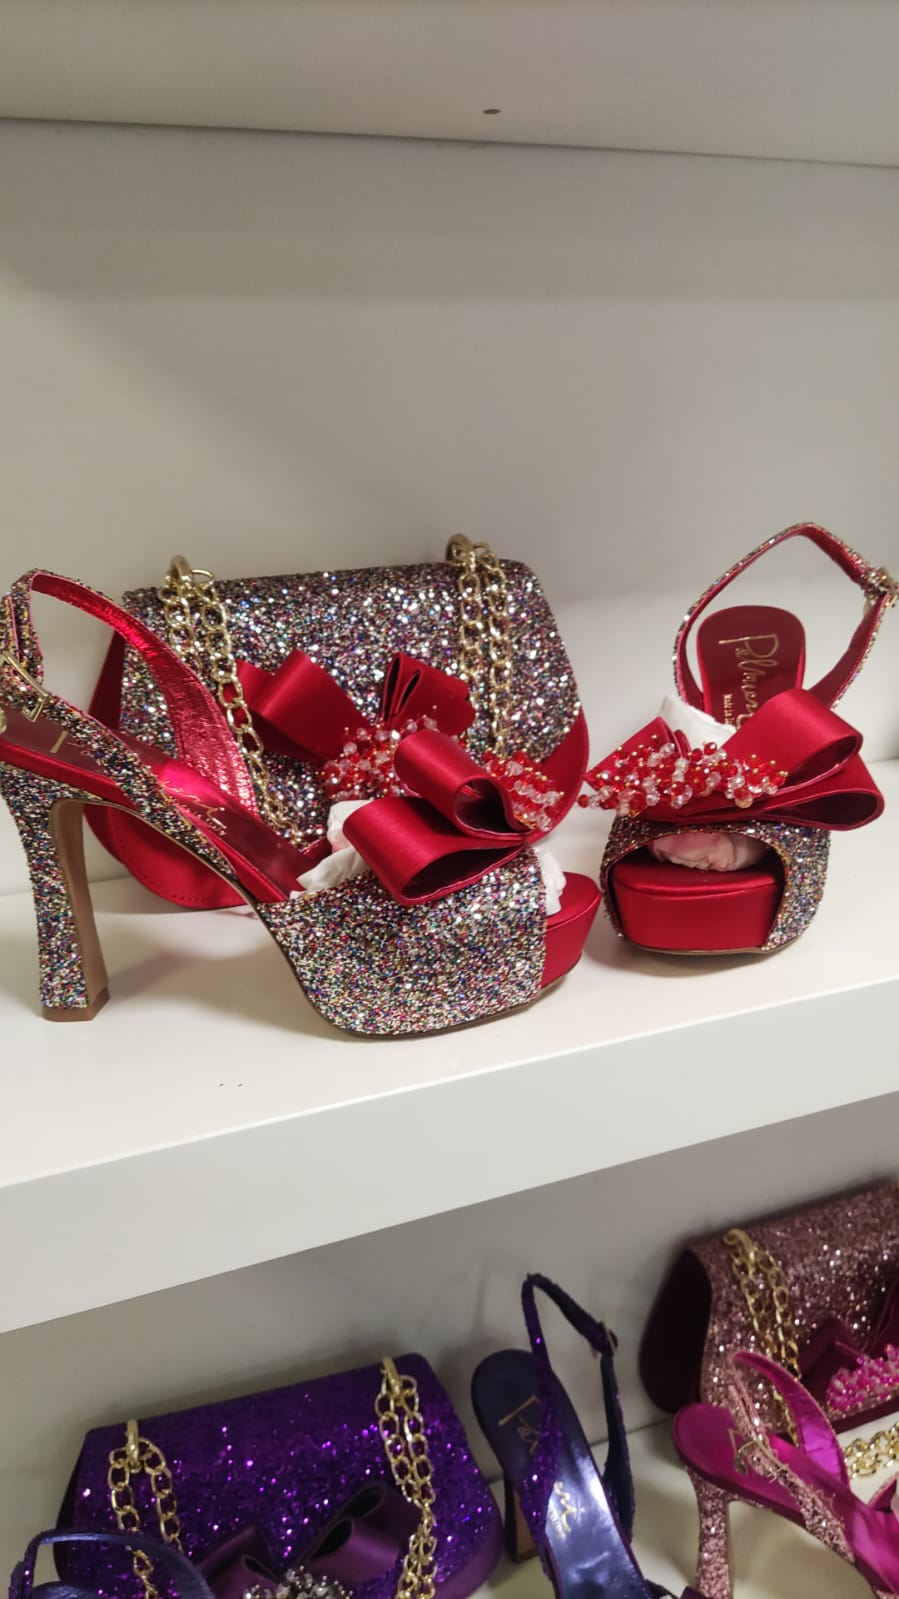 Luxury Italian Bruno shoe and bag - Godshandfashion - Red EUR 38/US 8, bruno shoes